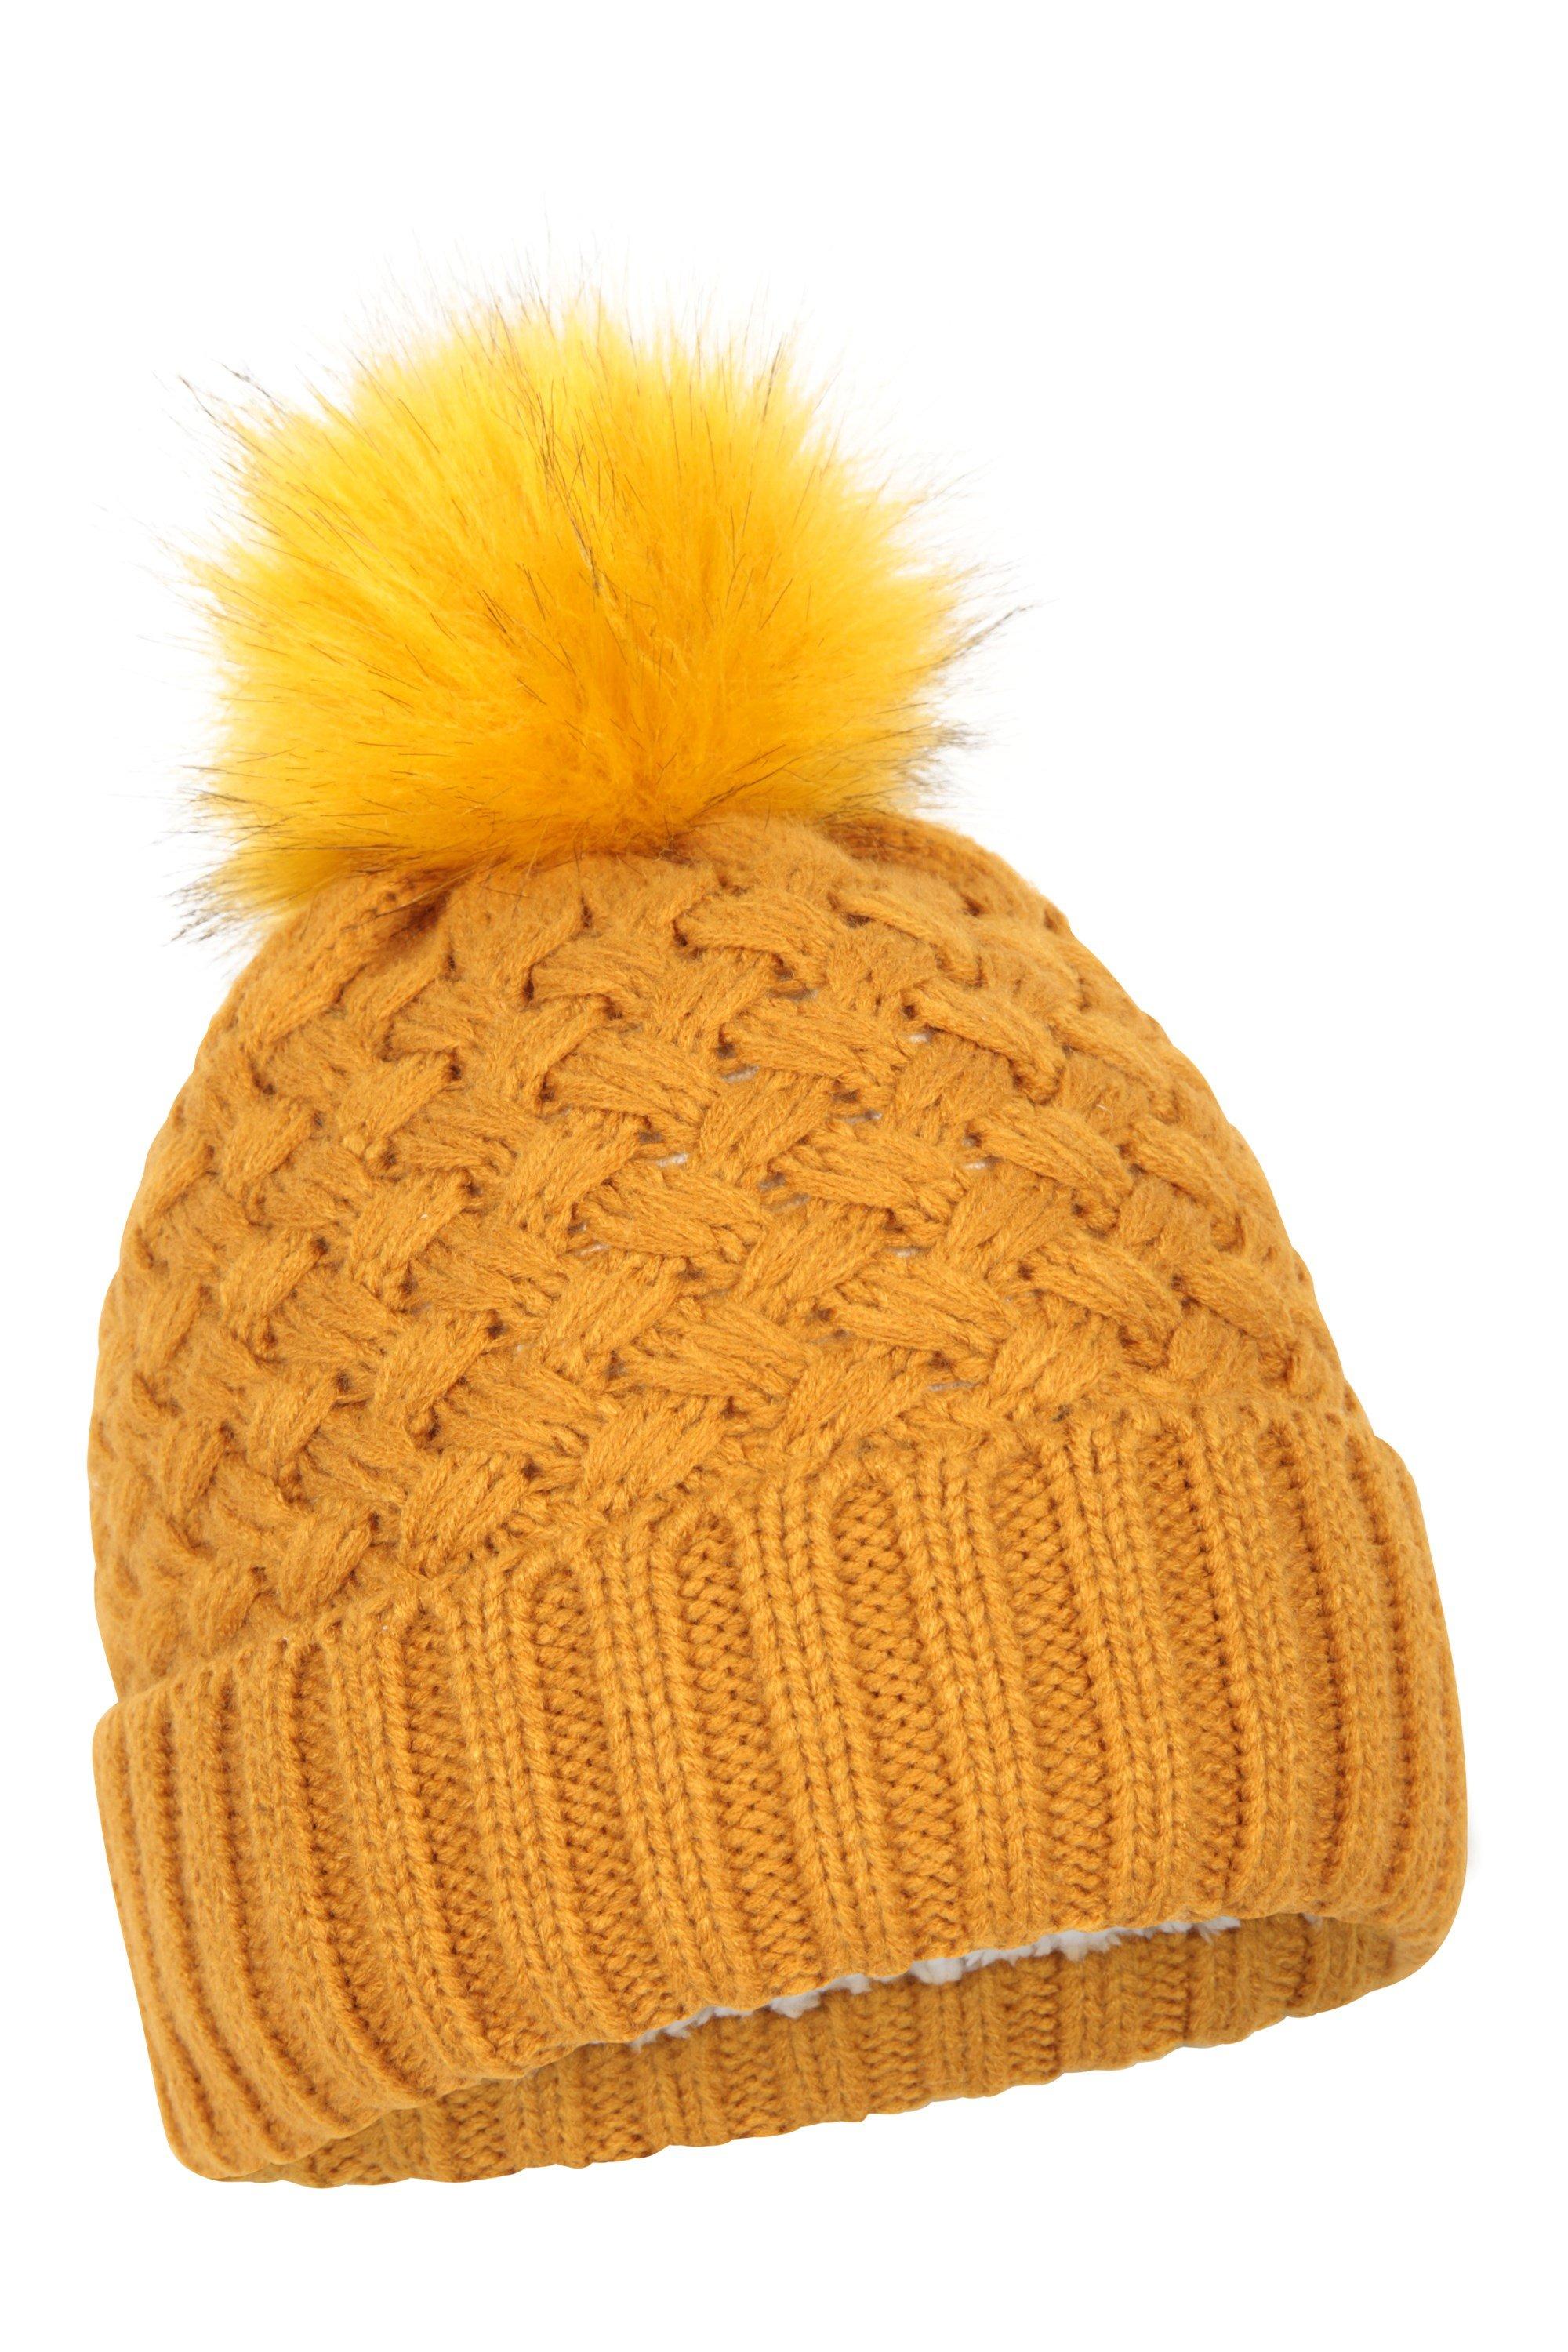 Зимняя лыжная шапка-бини с помпоном на меховой подкладке Mountain Warehouse, желтый шапка бини женская крупной вязки цвет – розовая фуксия